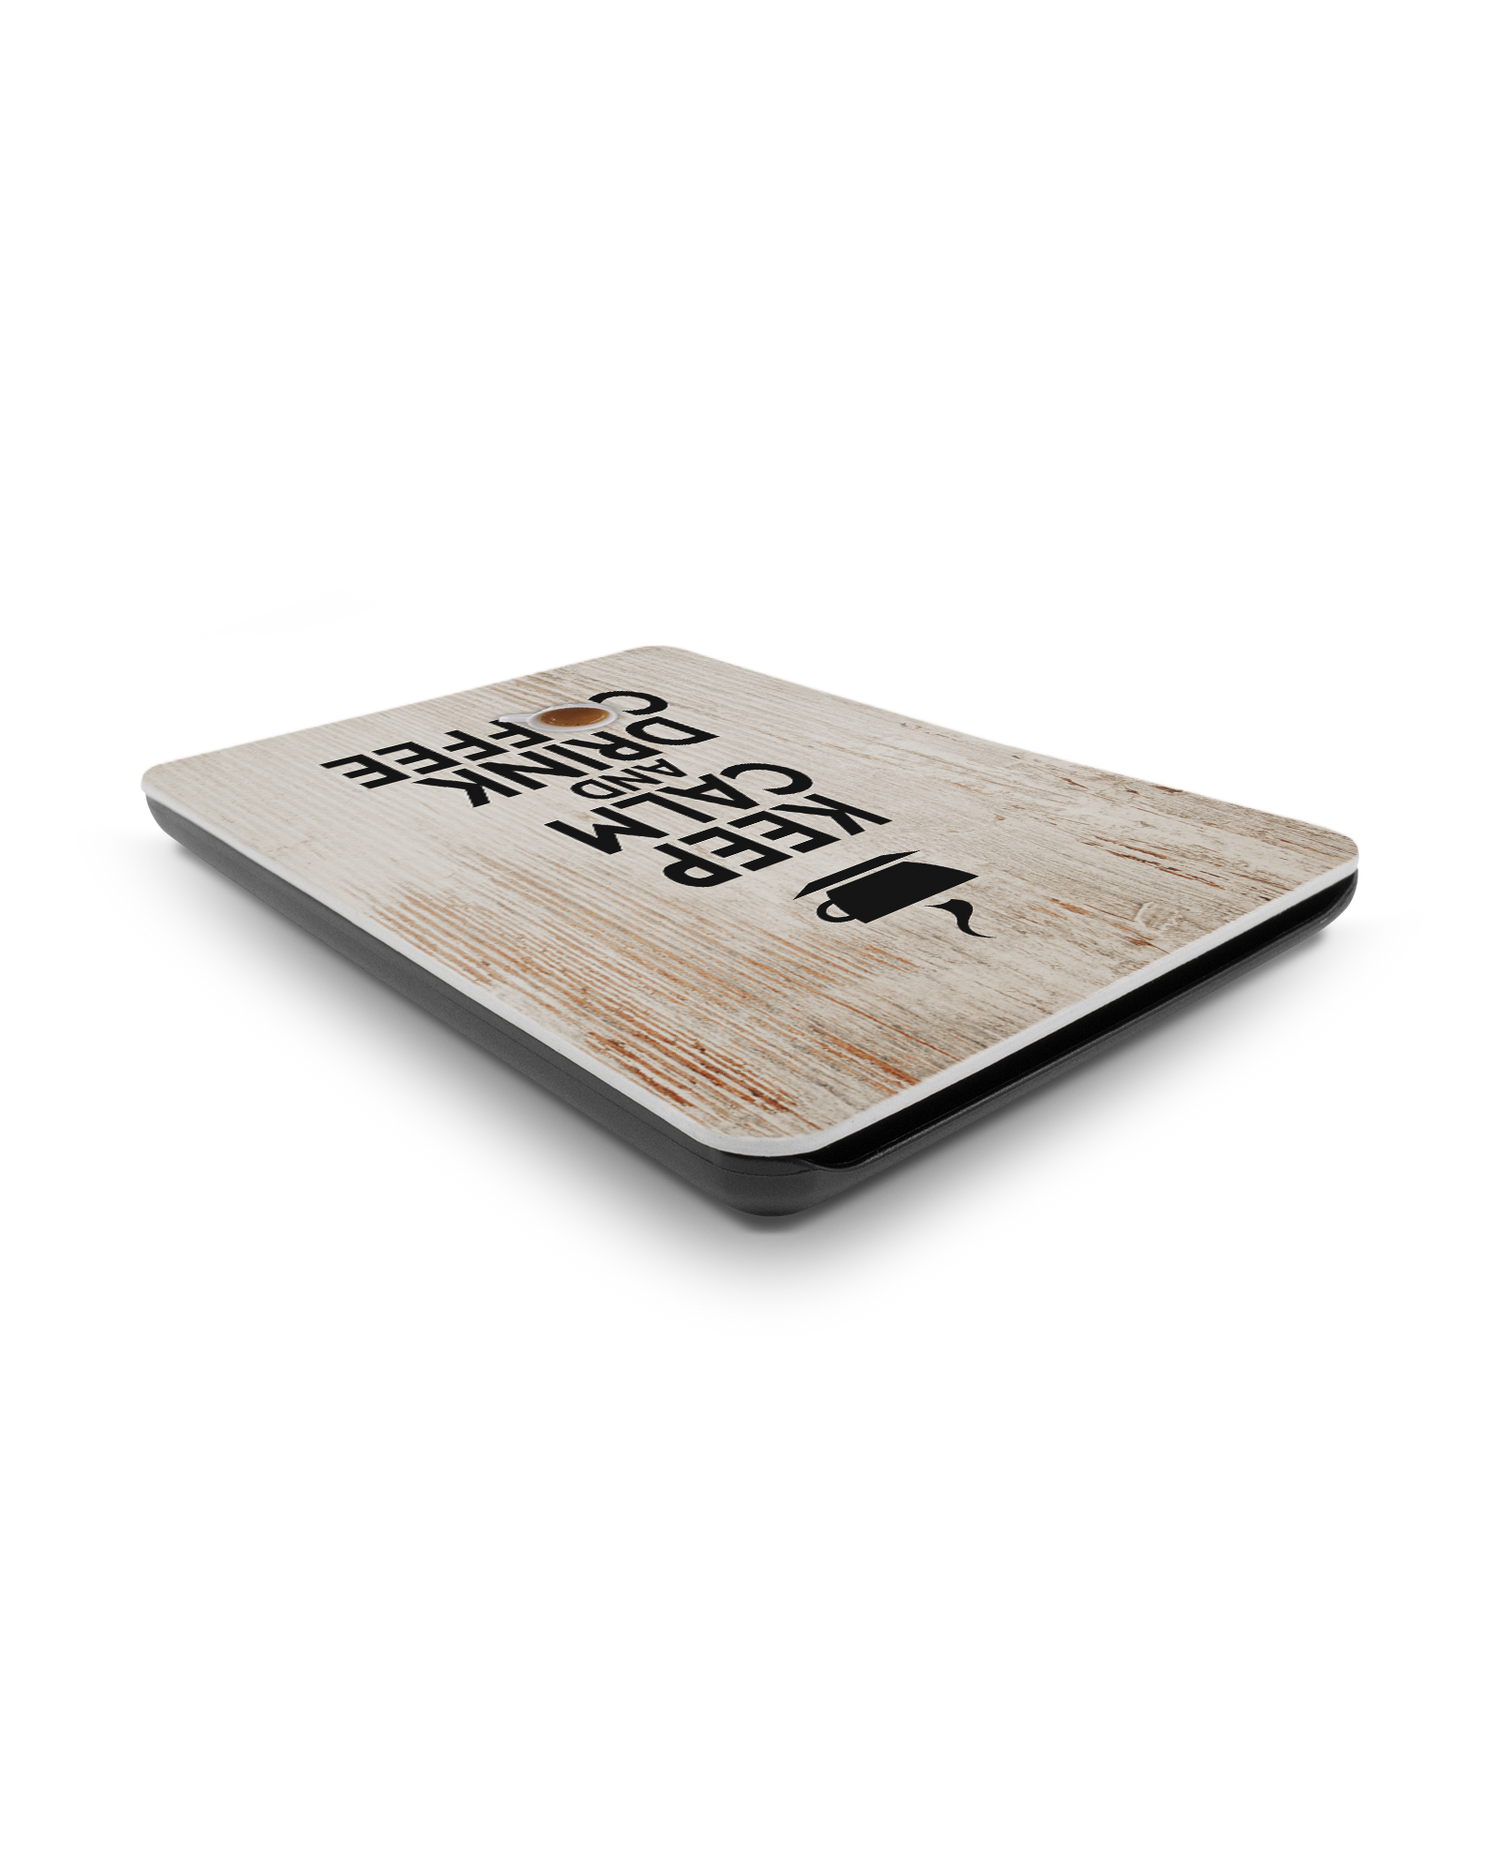 Drink Coffee eBook Reader Smart Case für Amazon New Kindle (2019): Liegend